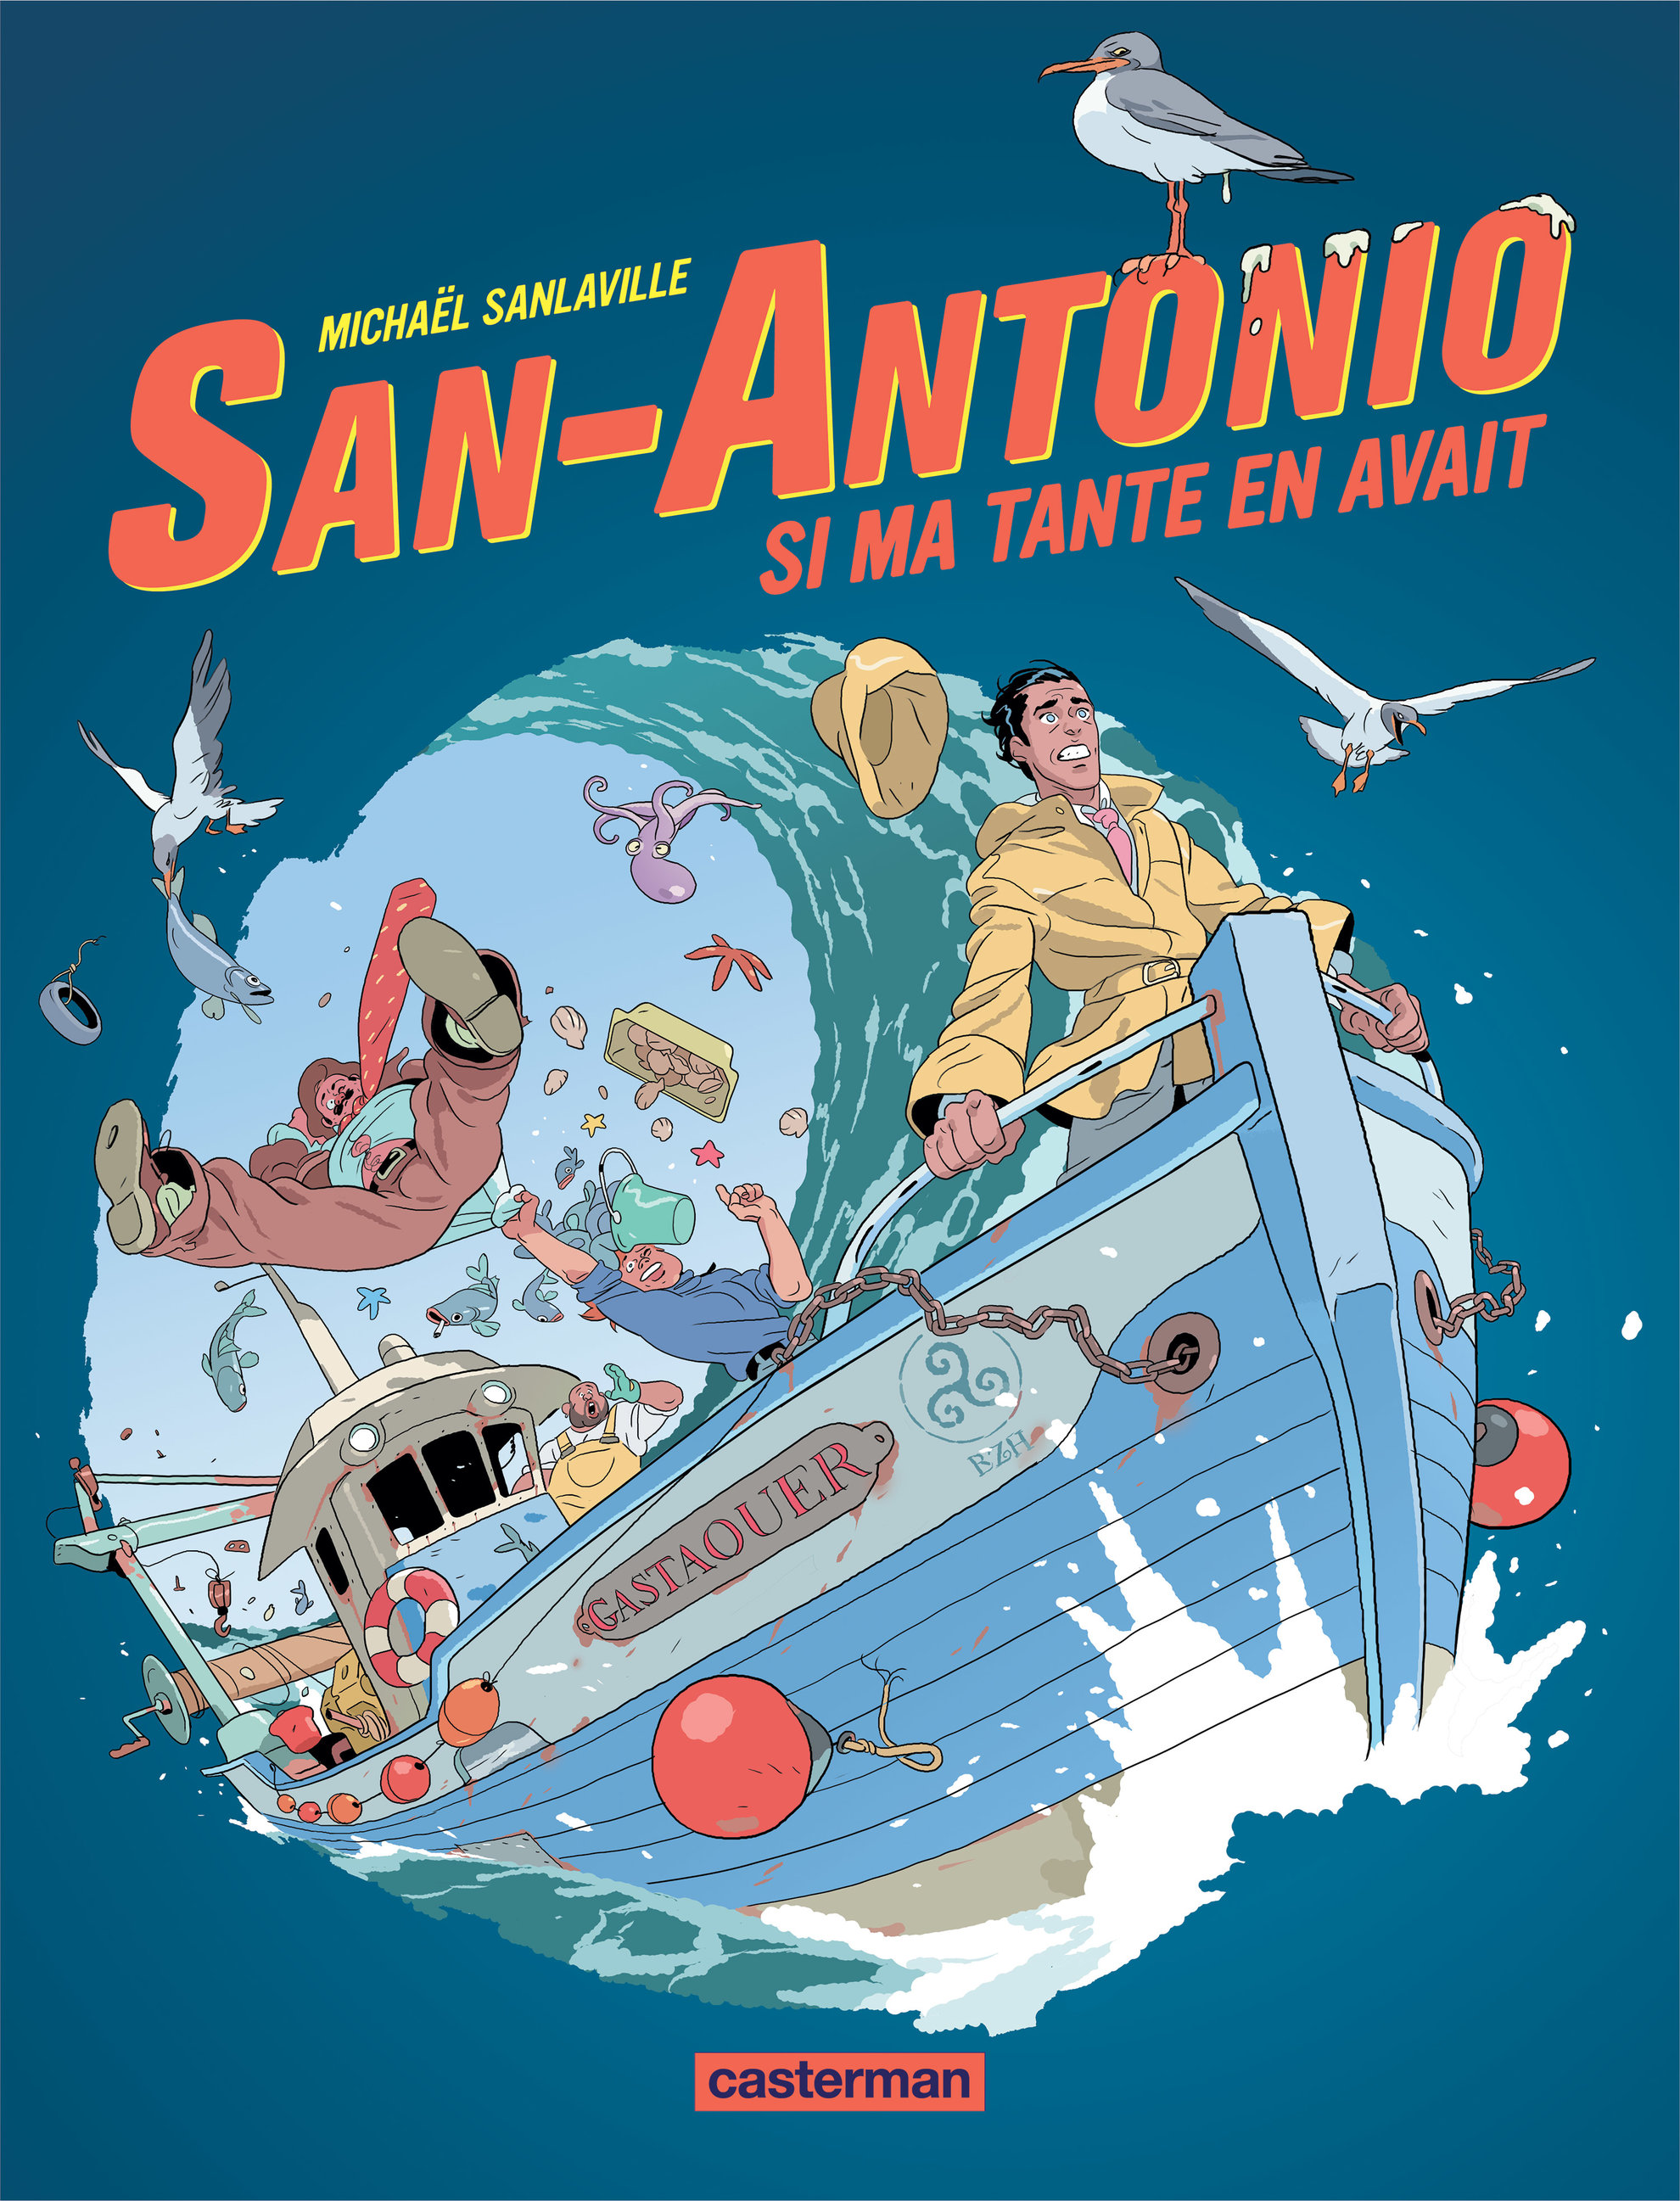 San-Antonio tome 02 (2020).jpg